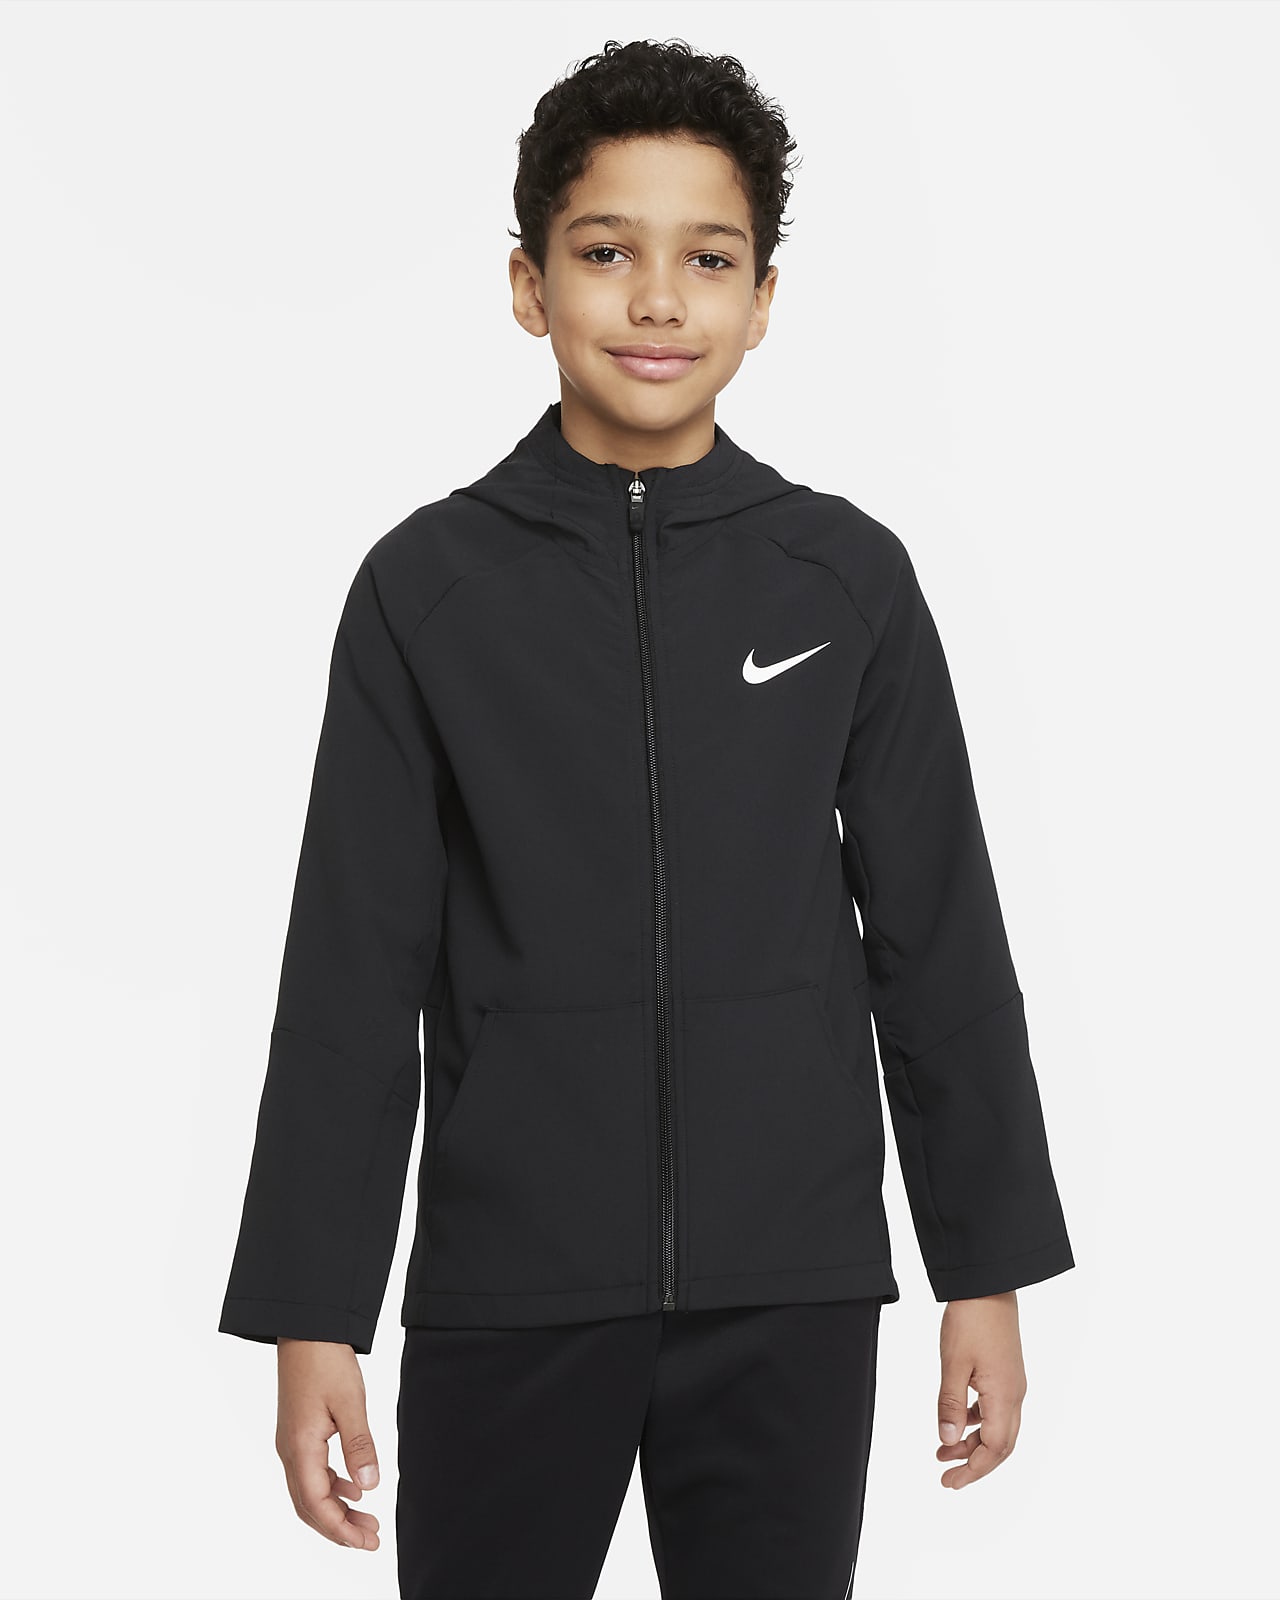 เสื้อแจ็คเก็ตเทรนนิ่งเด็กโตแบบทอ Nike Dri-FIT (ชาย)